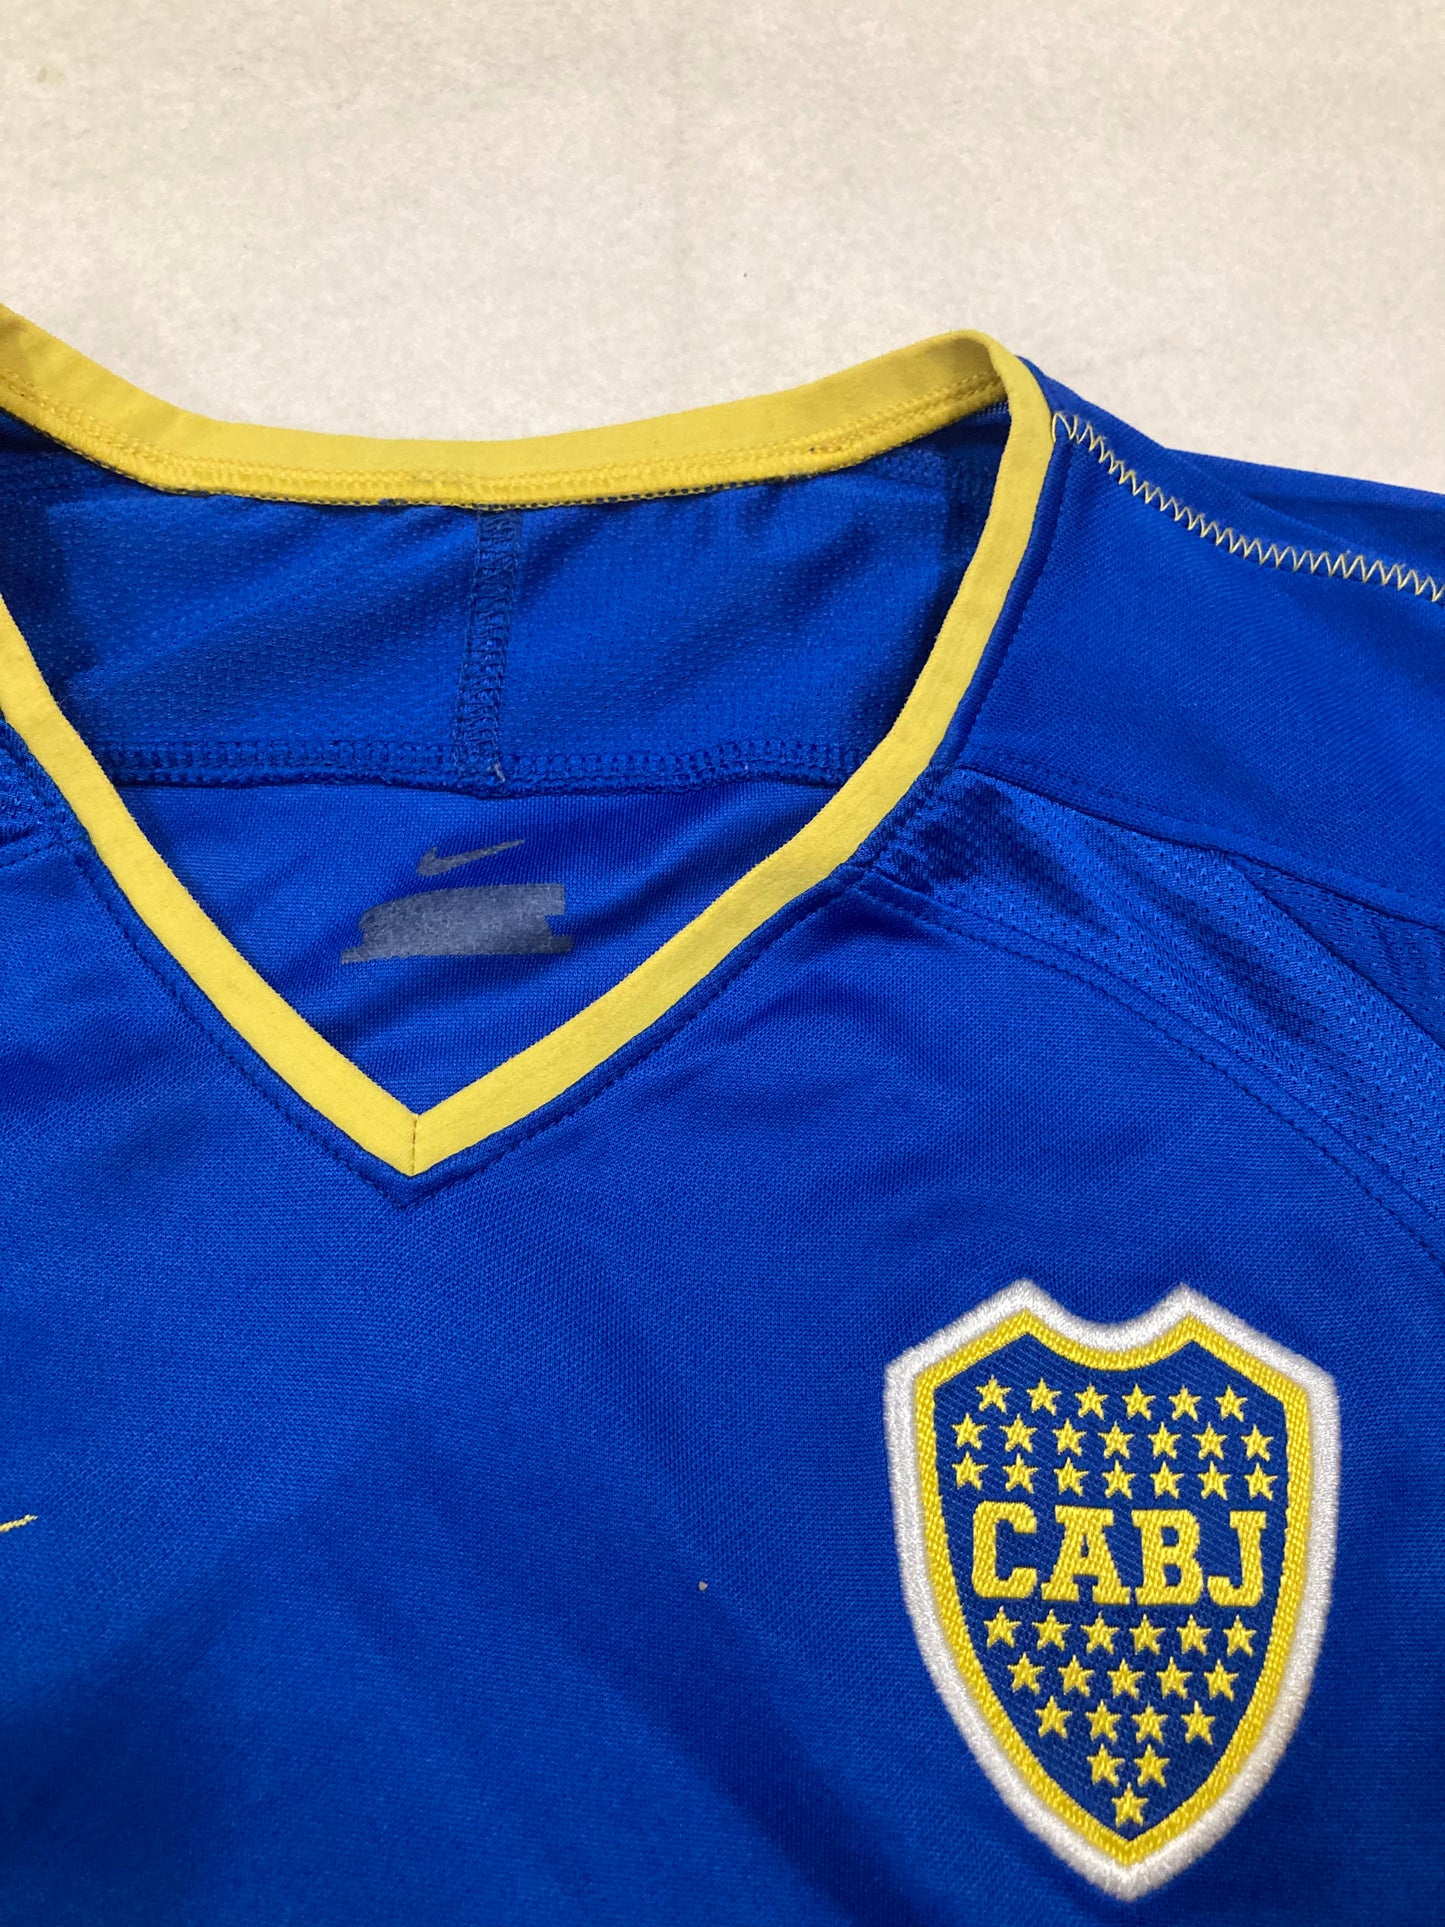 Camiseta Nike Boca Juniors 03/04 Vintage - S